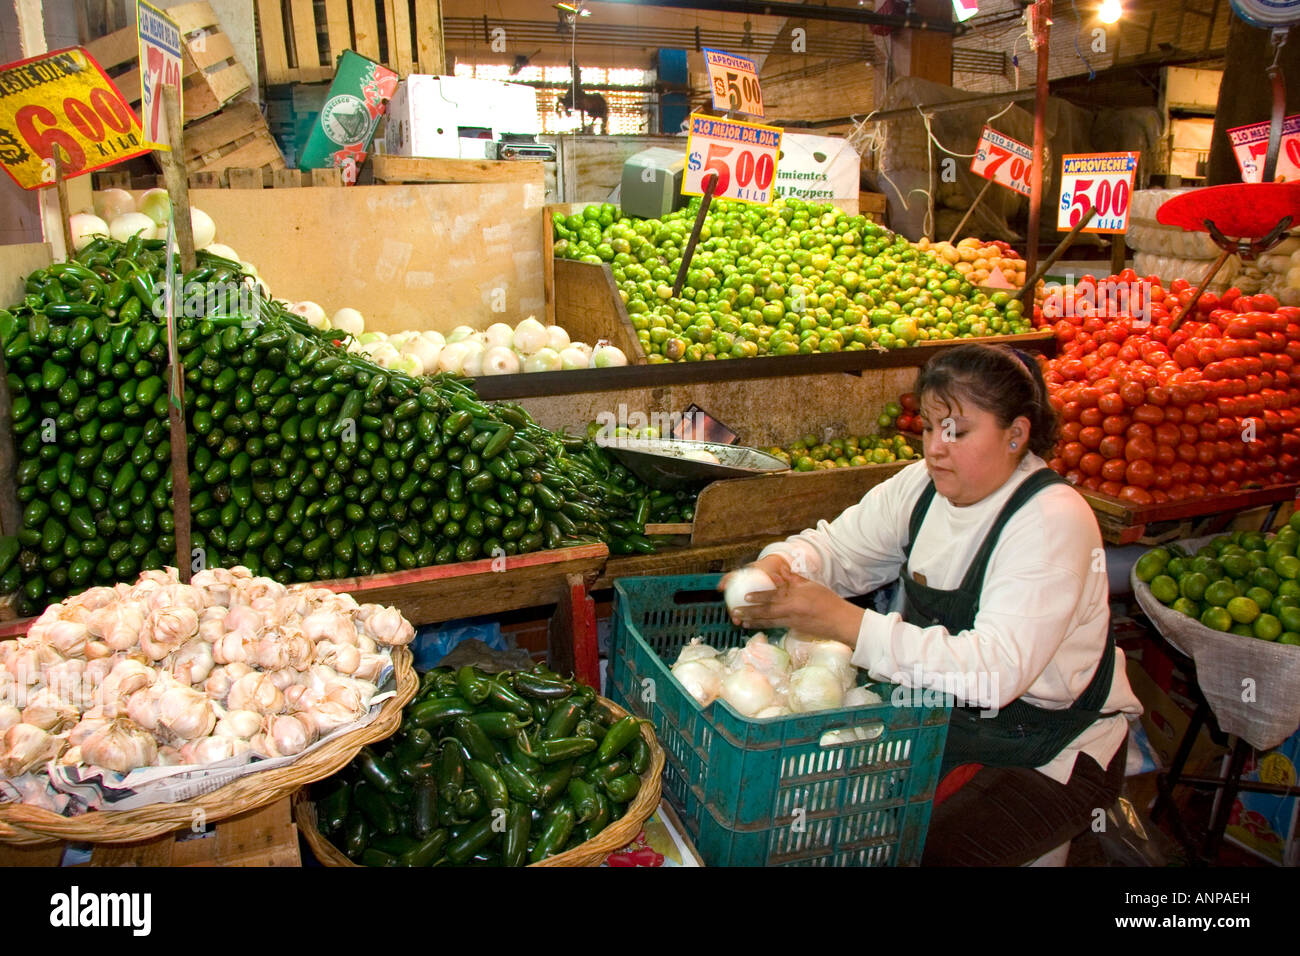 Stockage du vendeur d'oignons à une production de stand à la Merced à Mexico Mexique Marché Banque D'Images